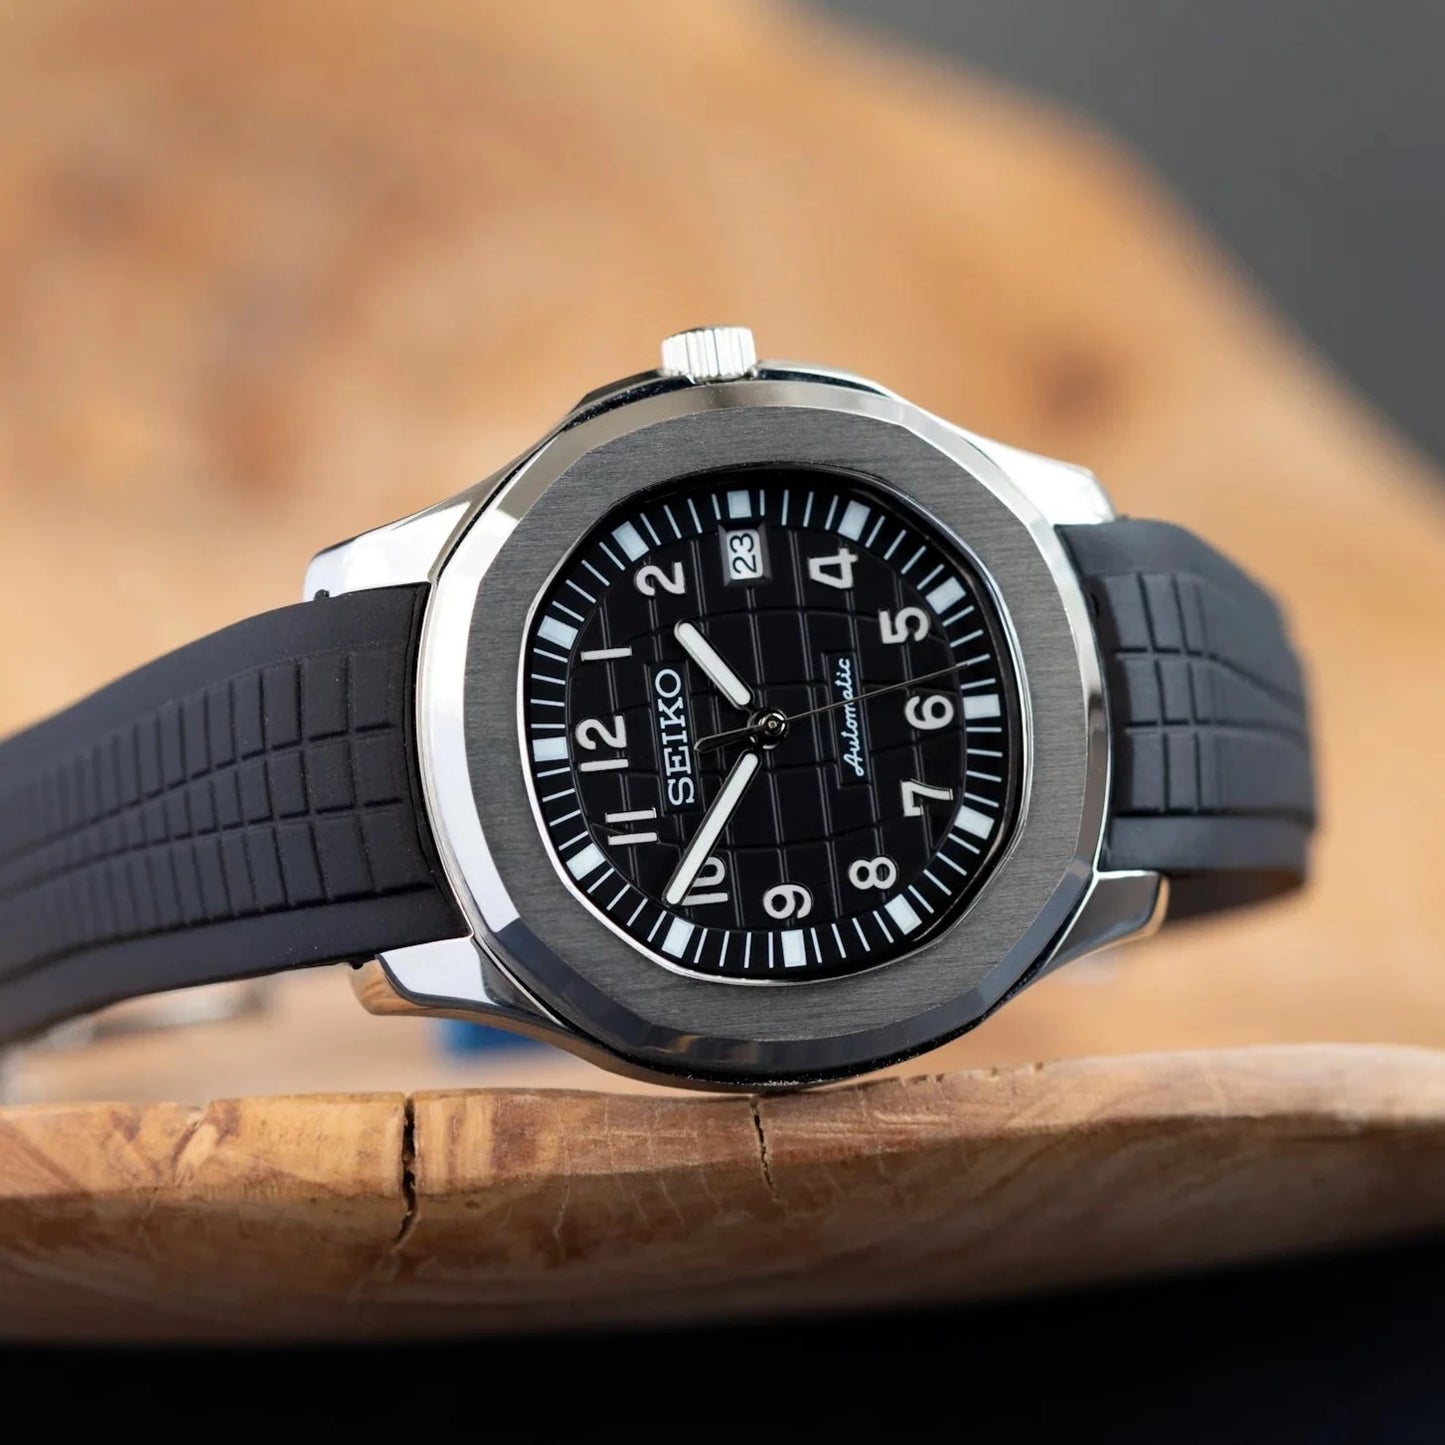 Seiko Mod Black Nautilus Watch with Silicone Strap